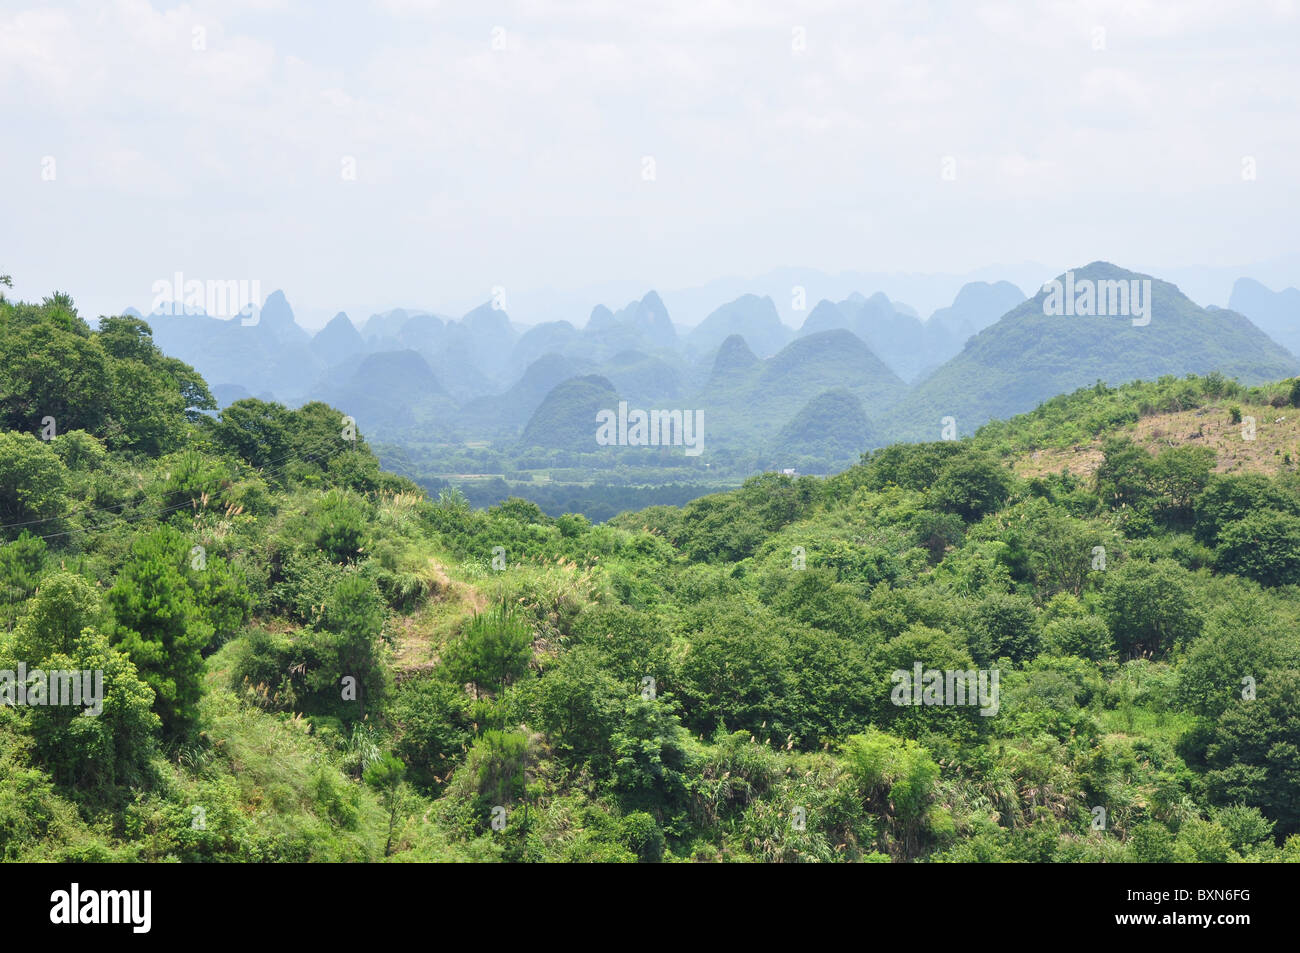 Vue imprenable sur le paysage dans la région de Guilin, Chine du Sud Banque D'Images